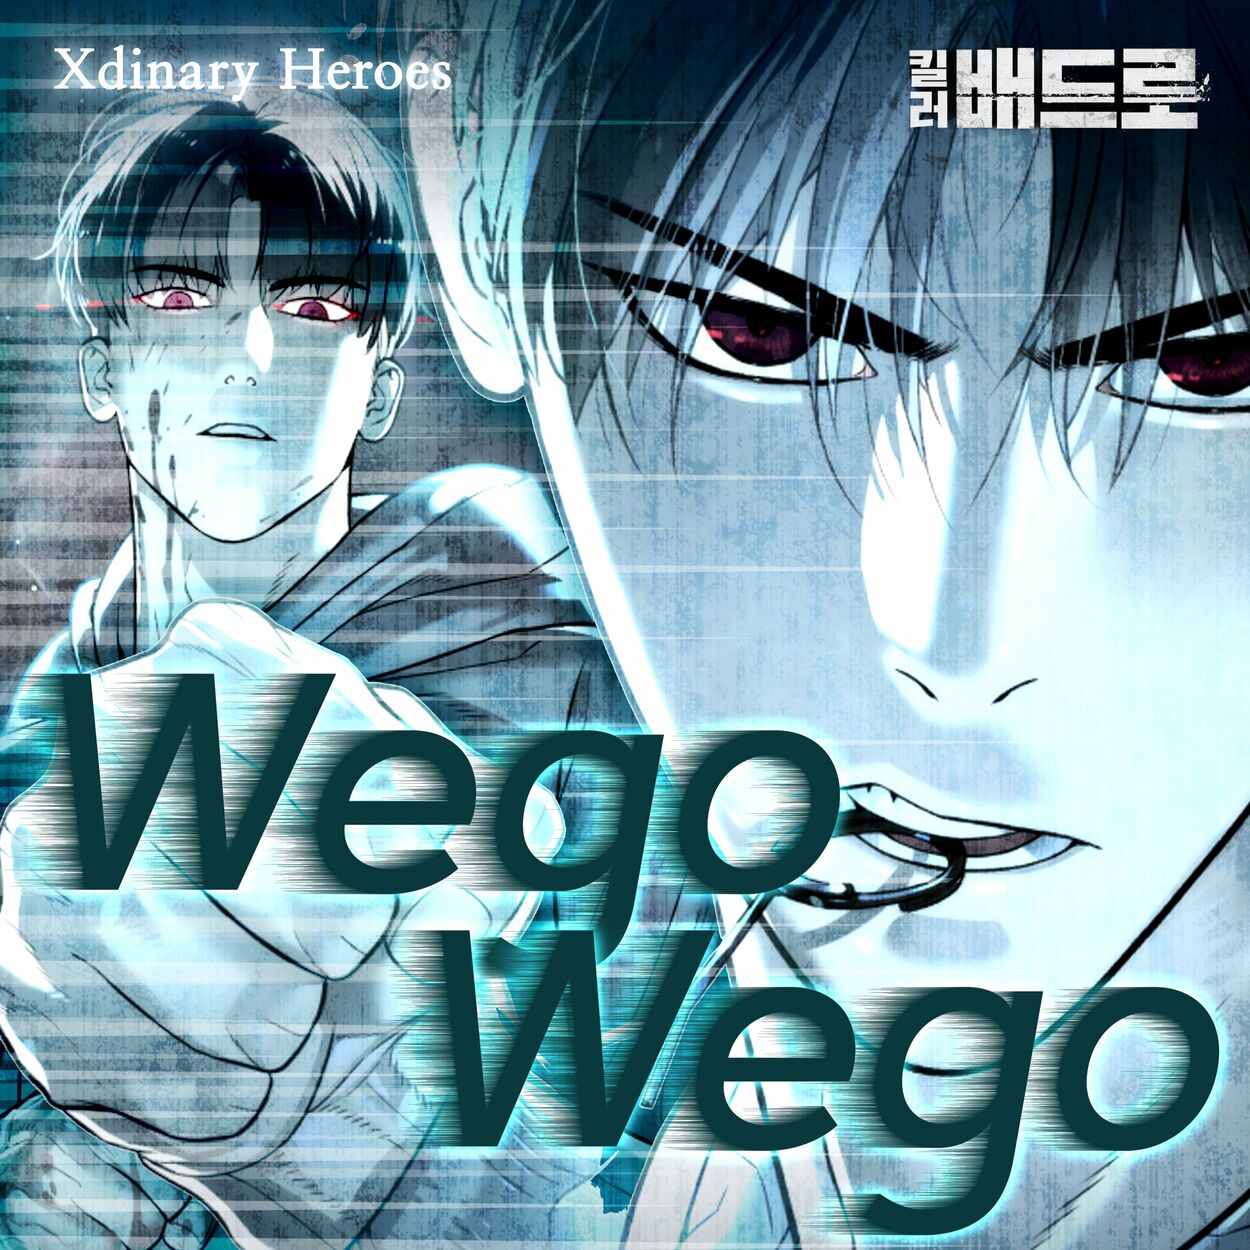 Xdinary Heroes – Wego Wego (Killer Peter X Xdinary Heroes) [Original Webtoon Soundtrack] – Single